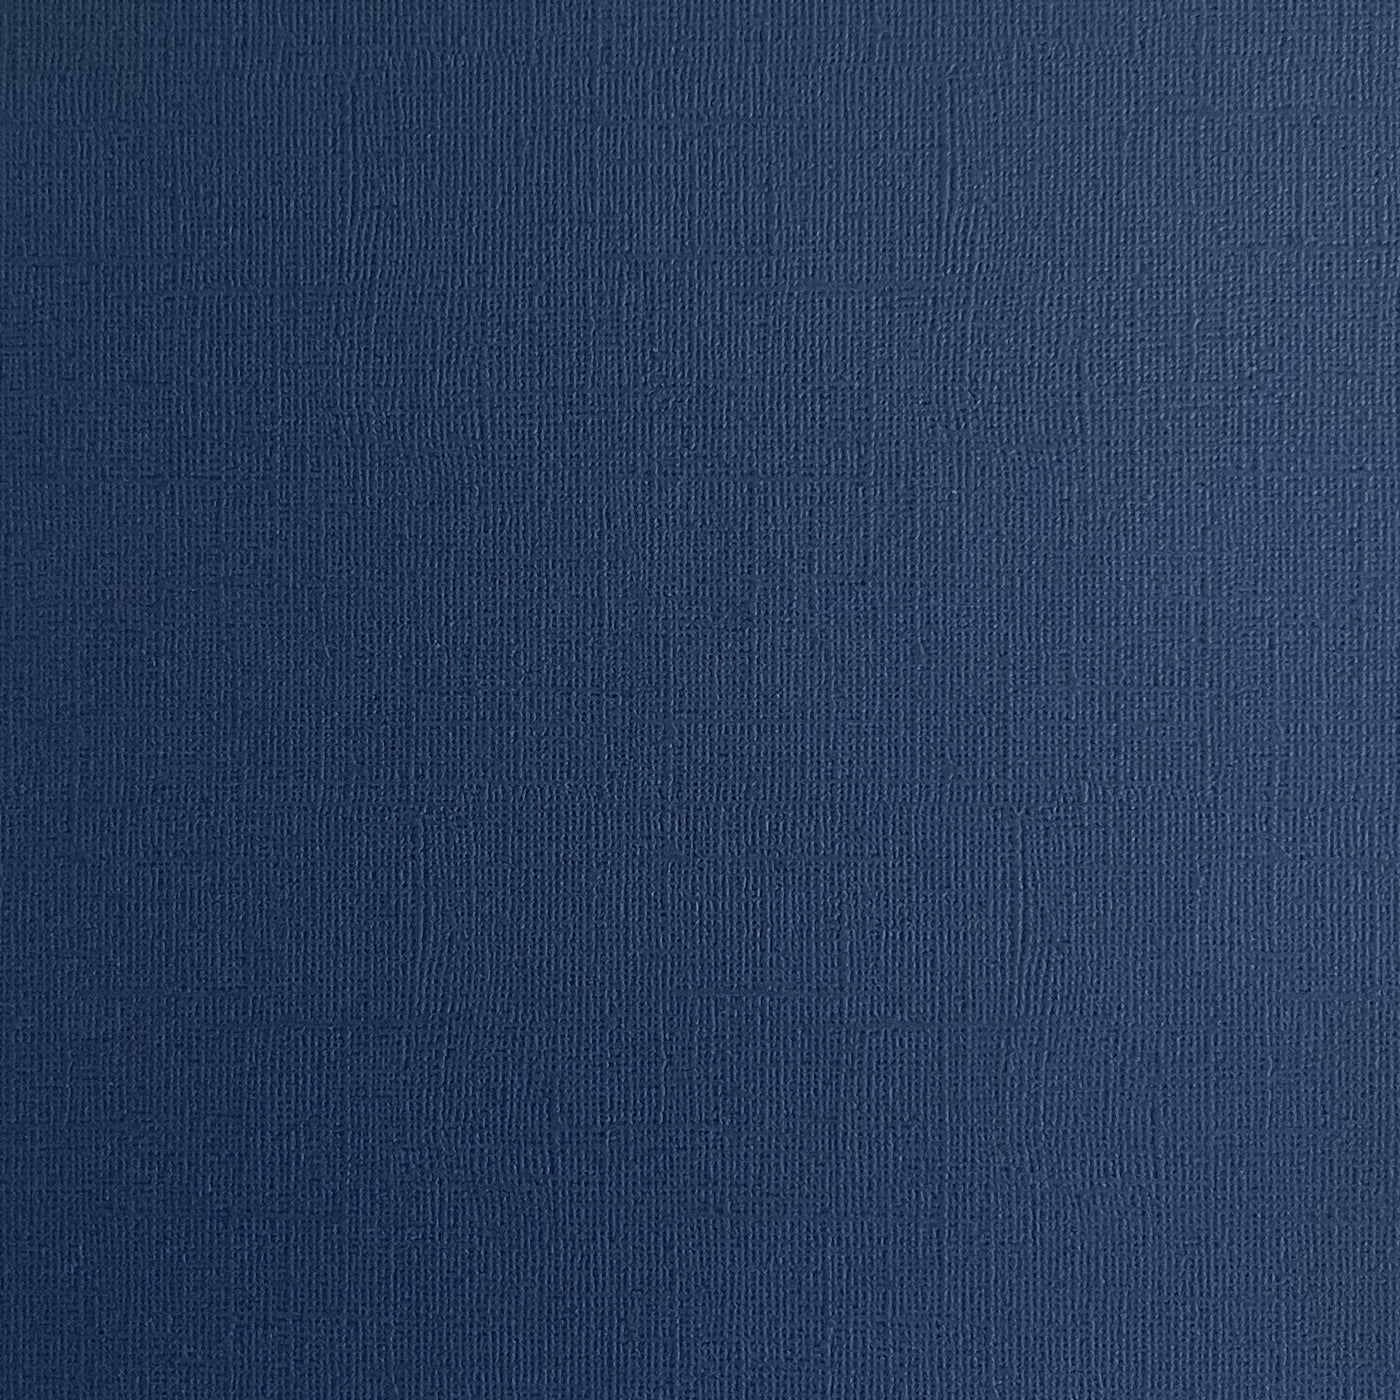 BLUE JEANS - Denim Textured 12x12 Cardstock - Encore Paper